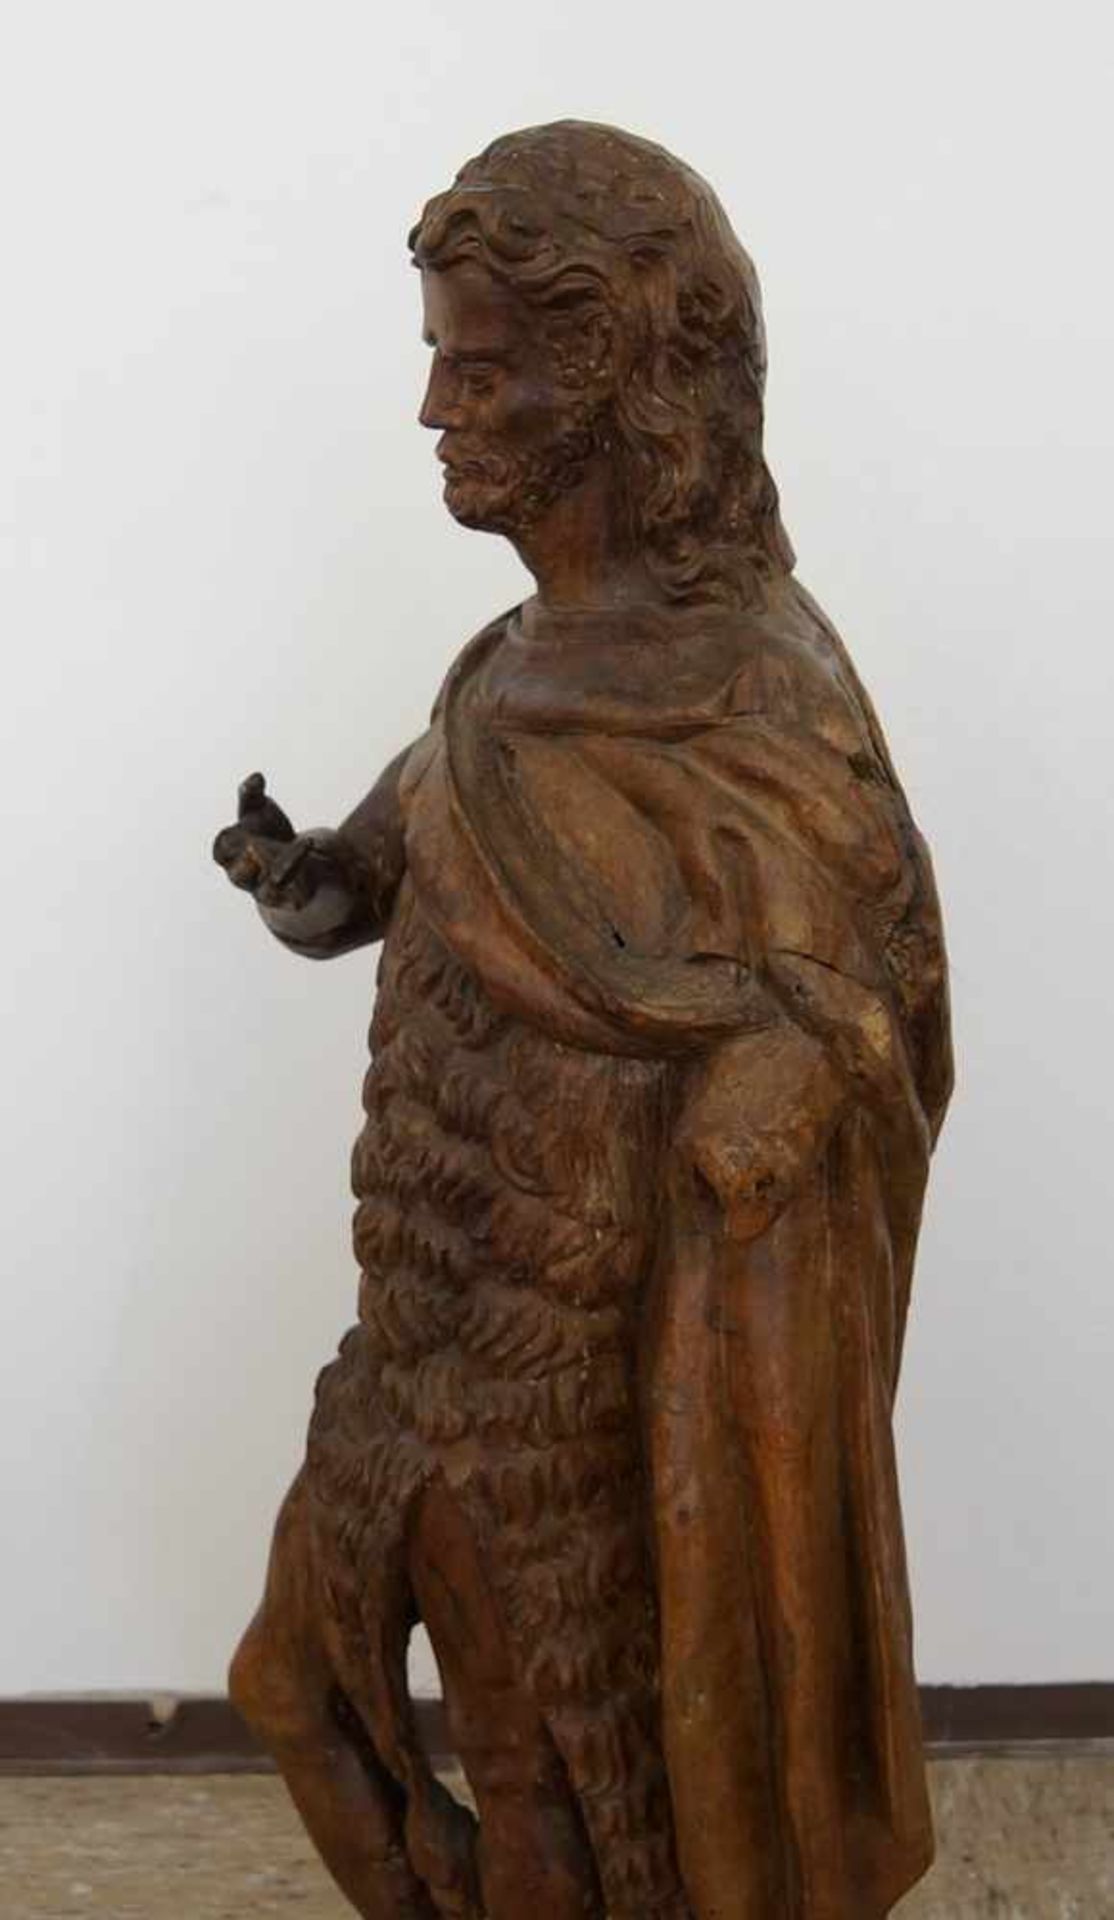 Grosse, in Holz geschnitzte Skulptur des heiligen Johannes, H 105cm- - -24.00 % buyer's premium on - Bild 5 aus 11